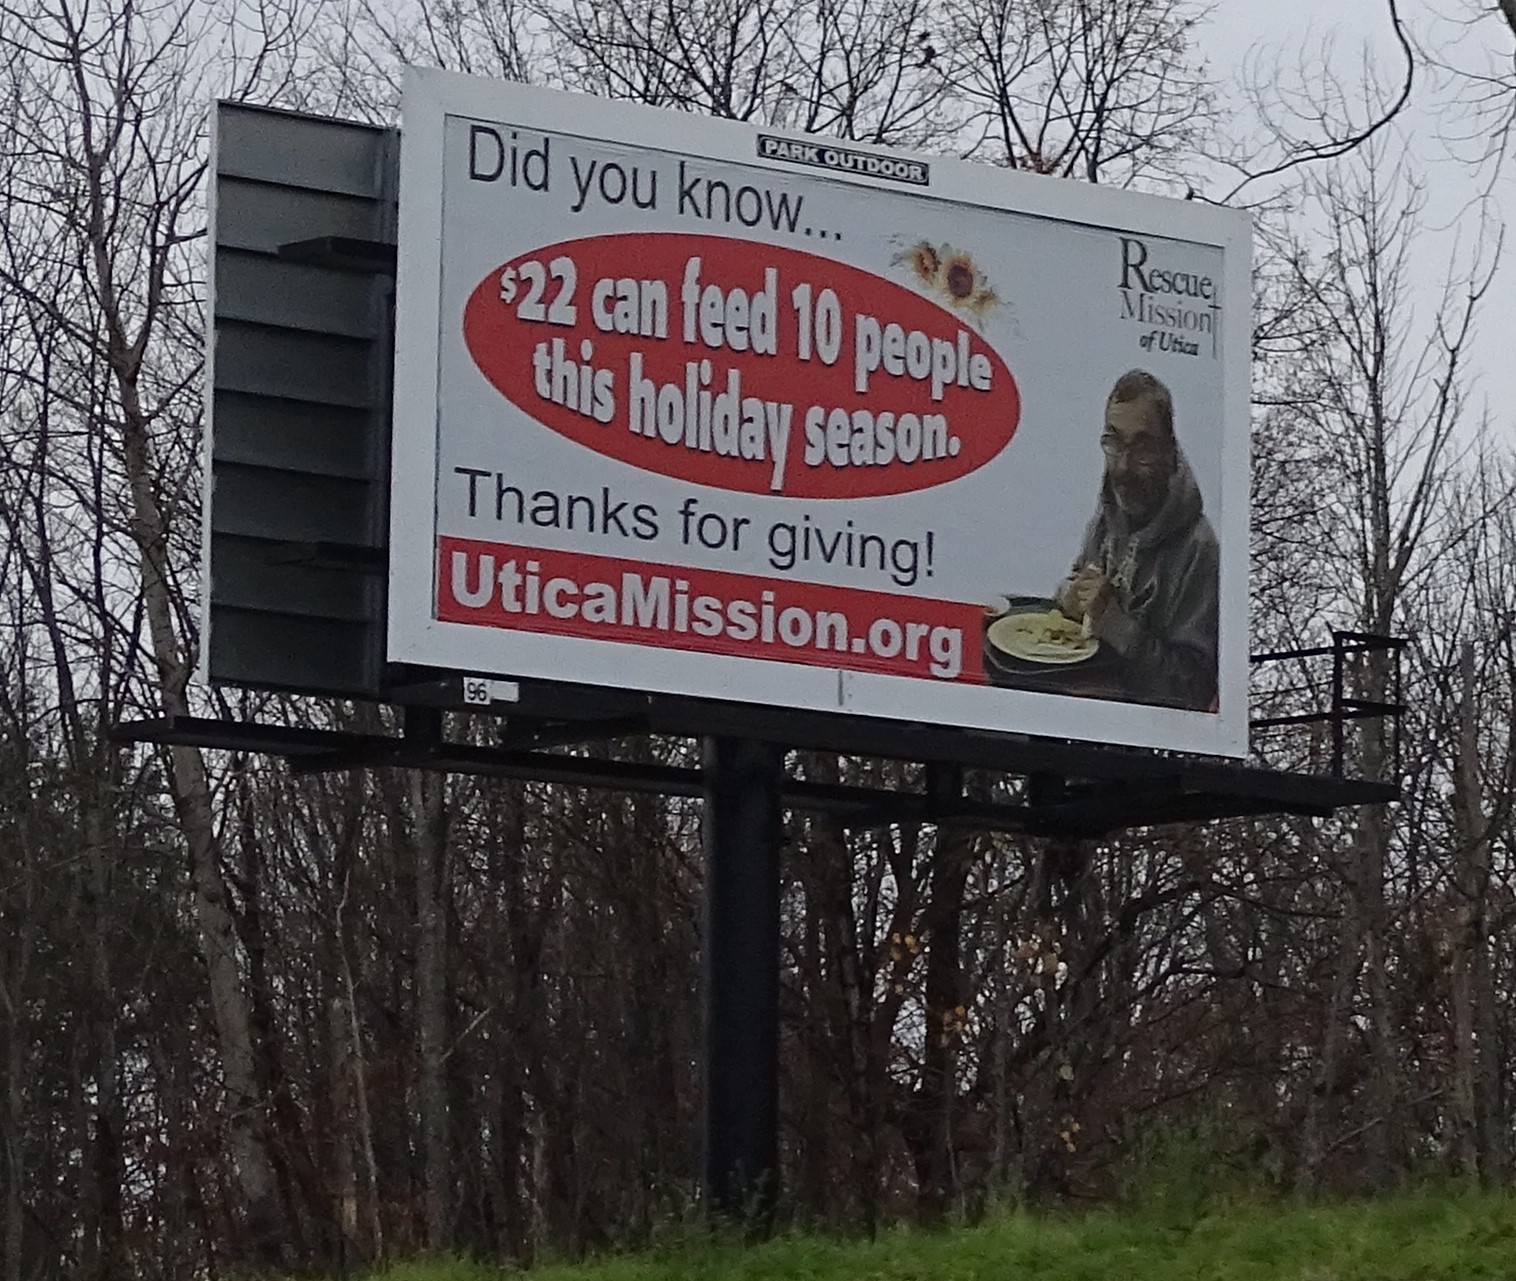 Rescue Mission of Utica - Addiction Stabilization Center